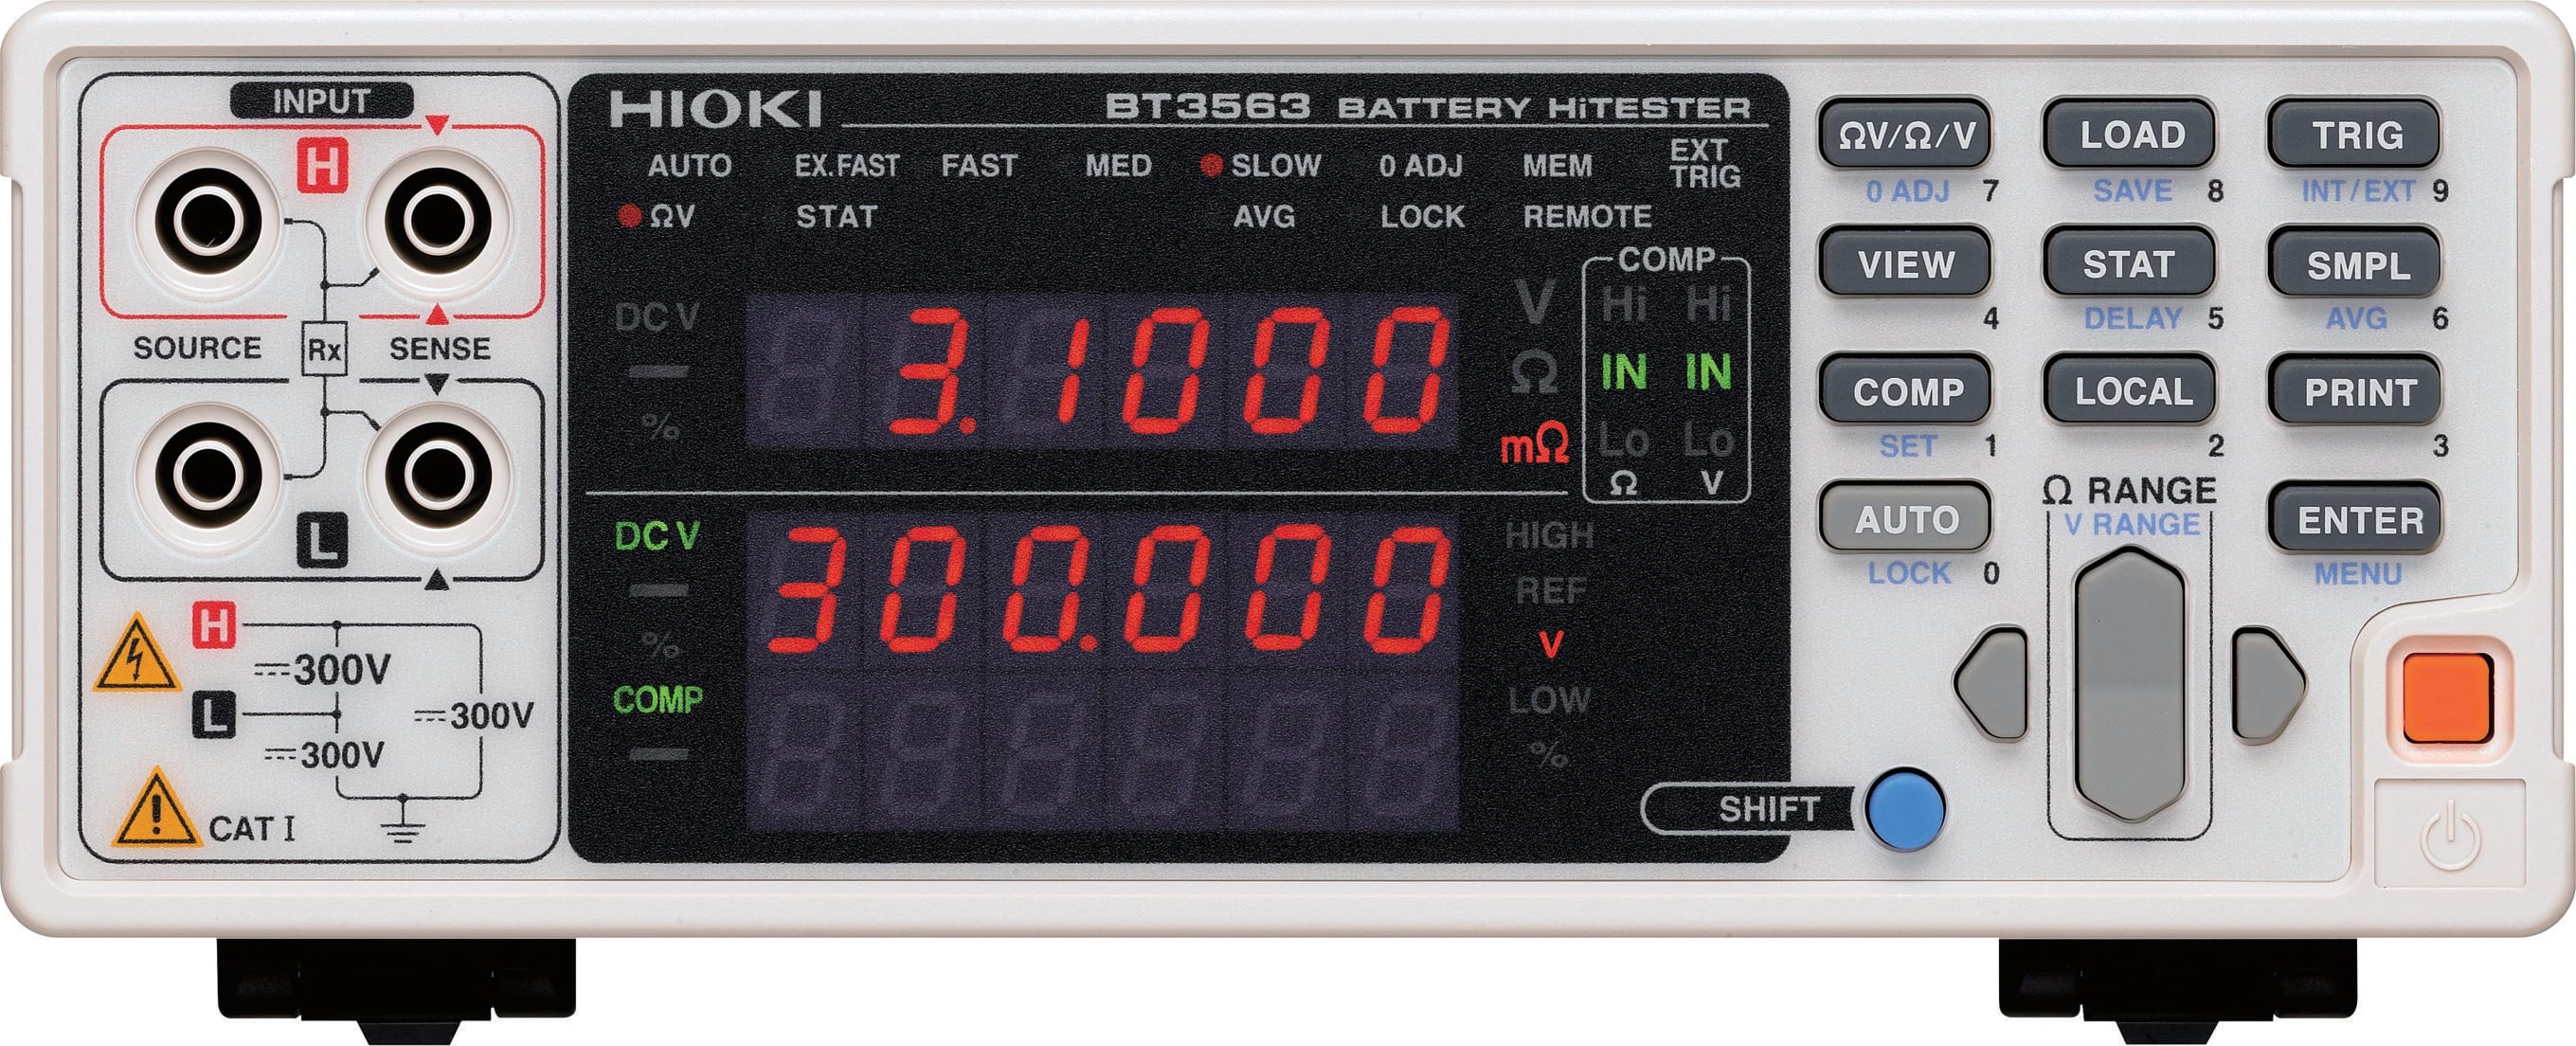 Hioki BT3562 Battery HiTester GP-IB and Analog Output